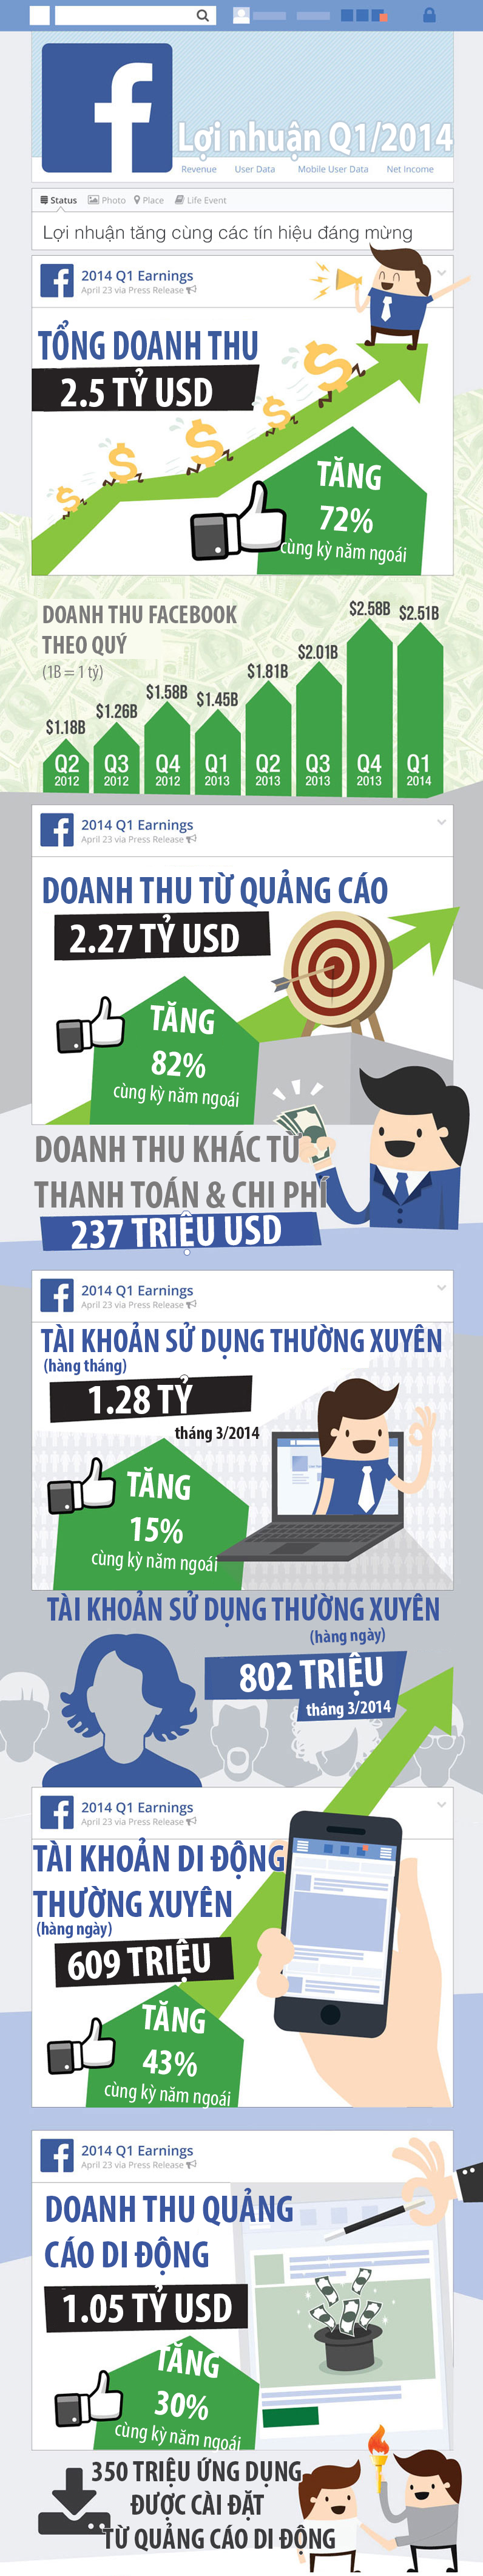 doanh thu facebook tăng gấp đôi